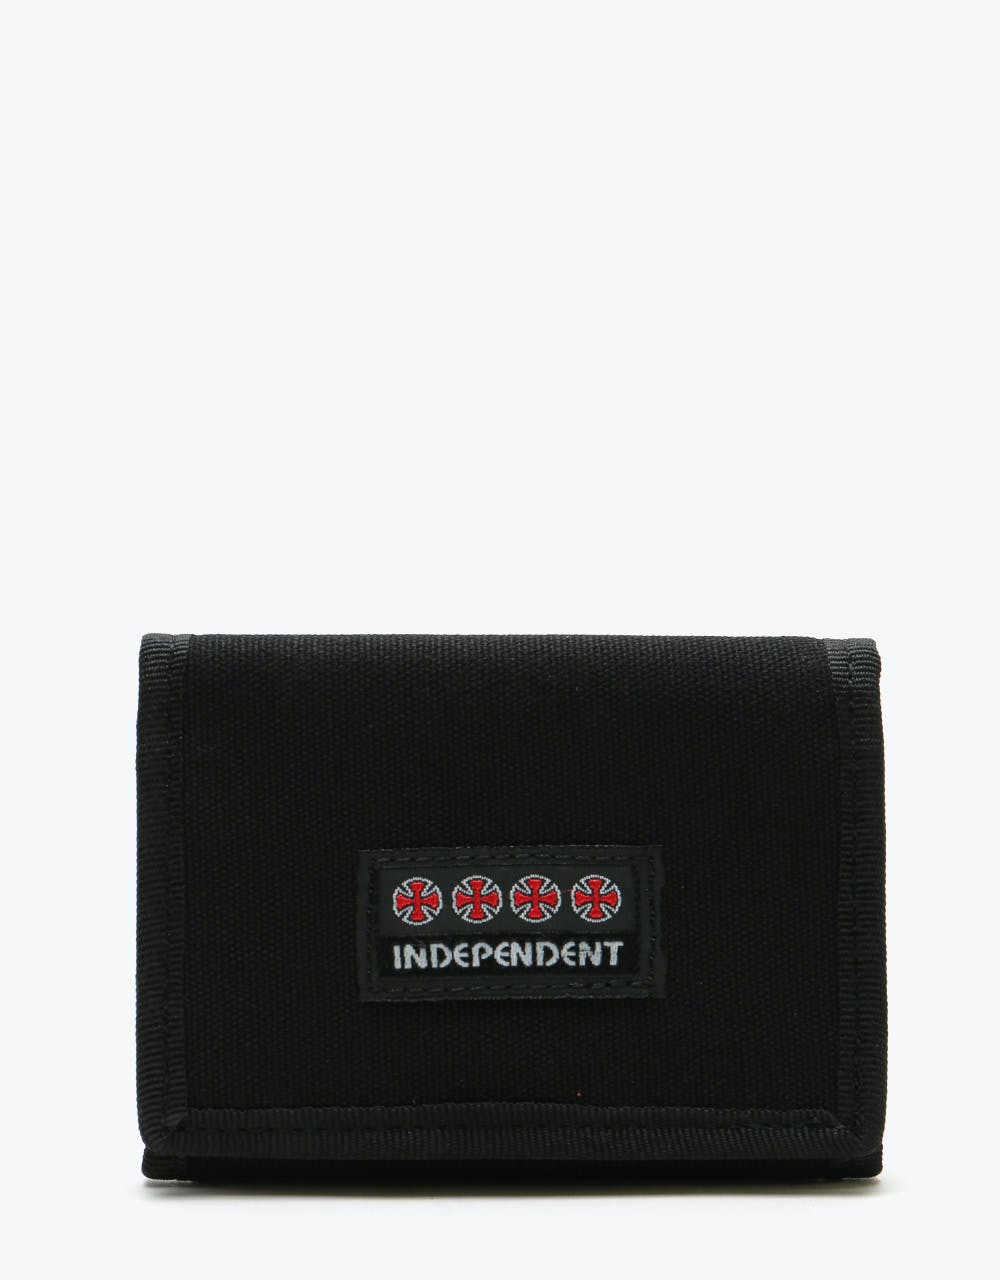 Independent Manner Wallet - Black